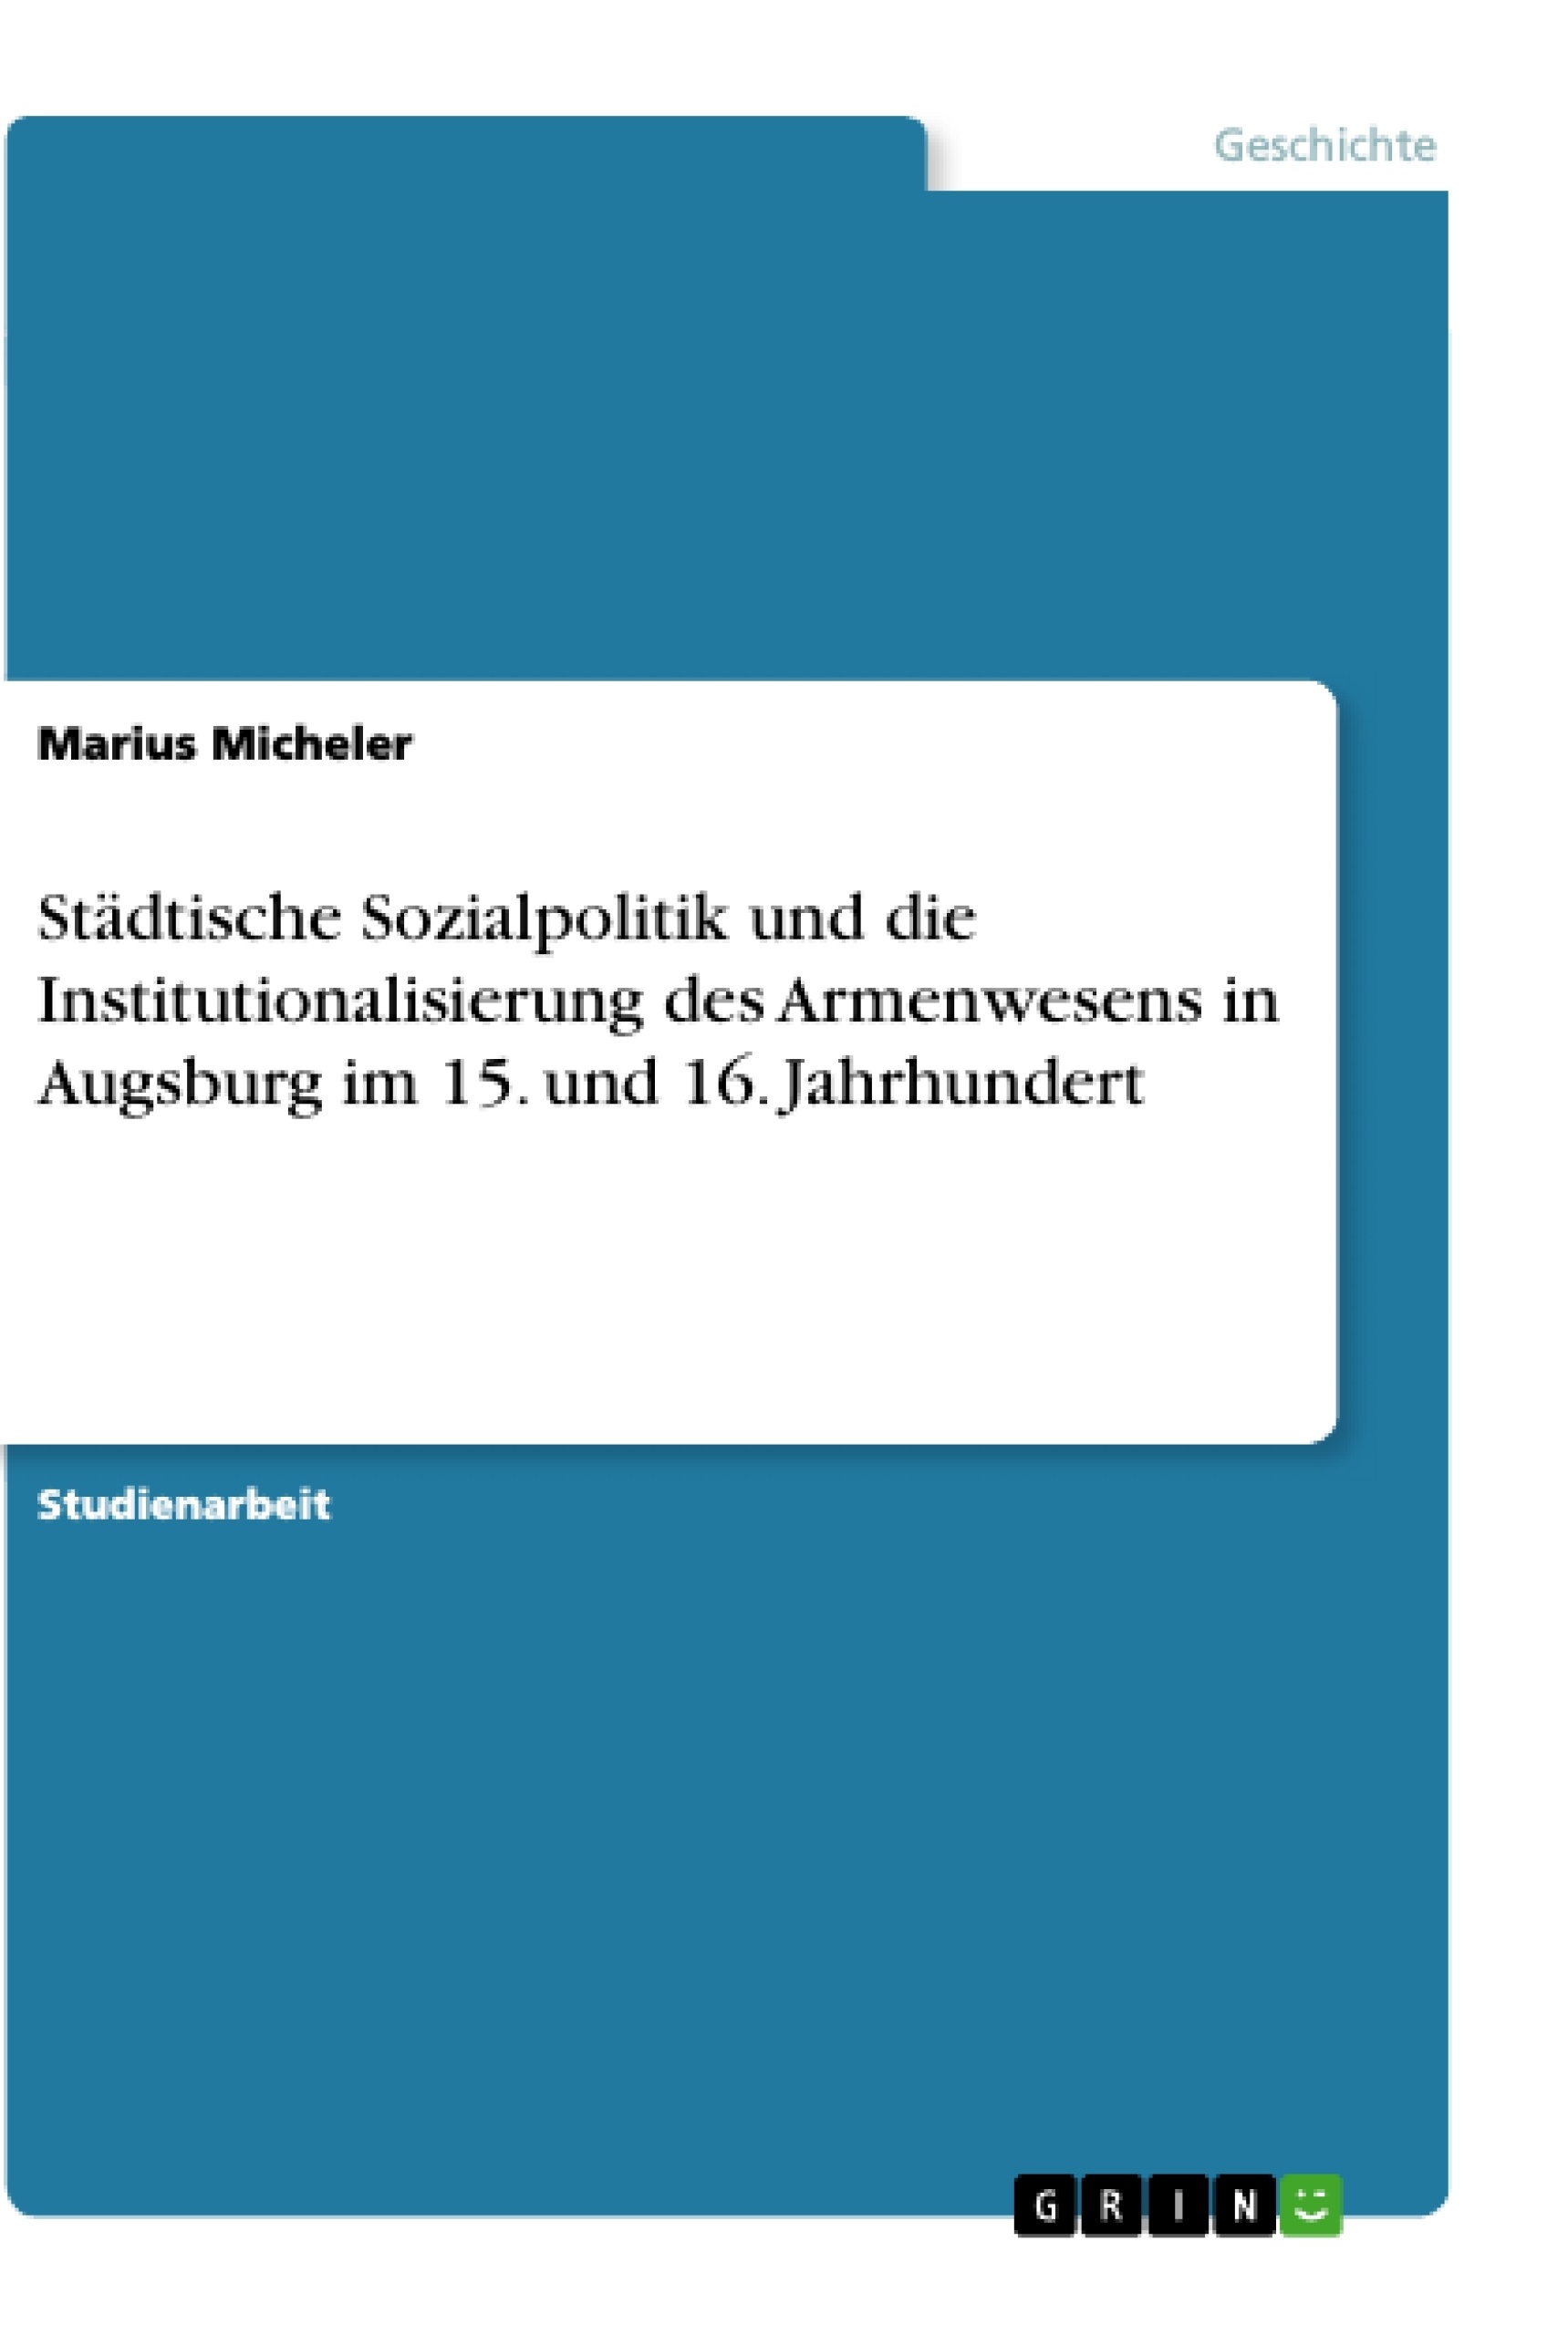 Titre: Städtische Sozialpolitik und die Institutionalisierung des Armenwesens in Augsburg im 15. und 16. Jahrhundert